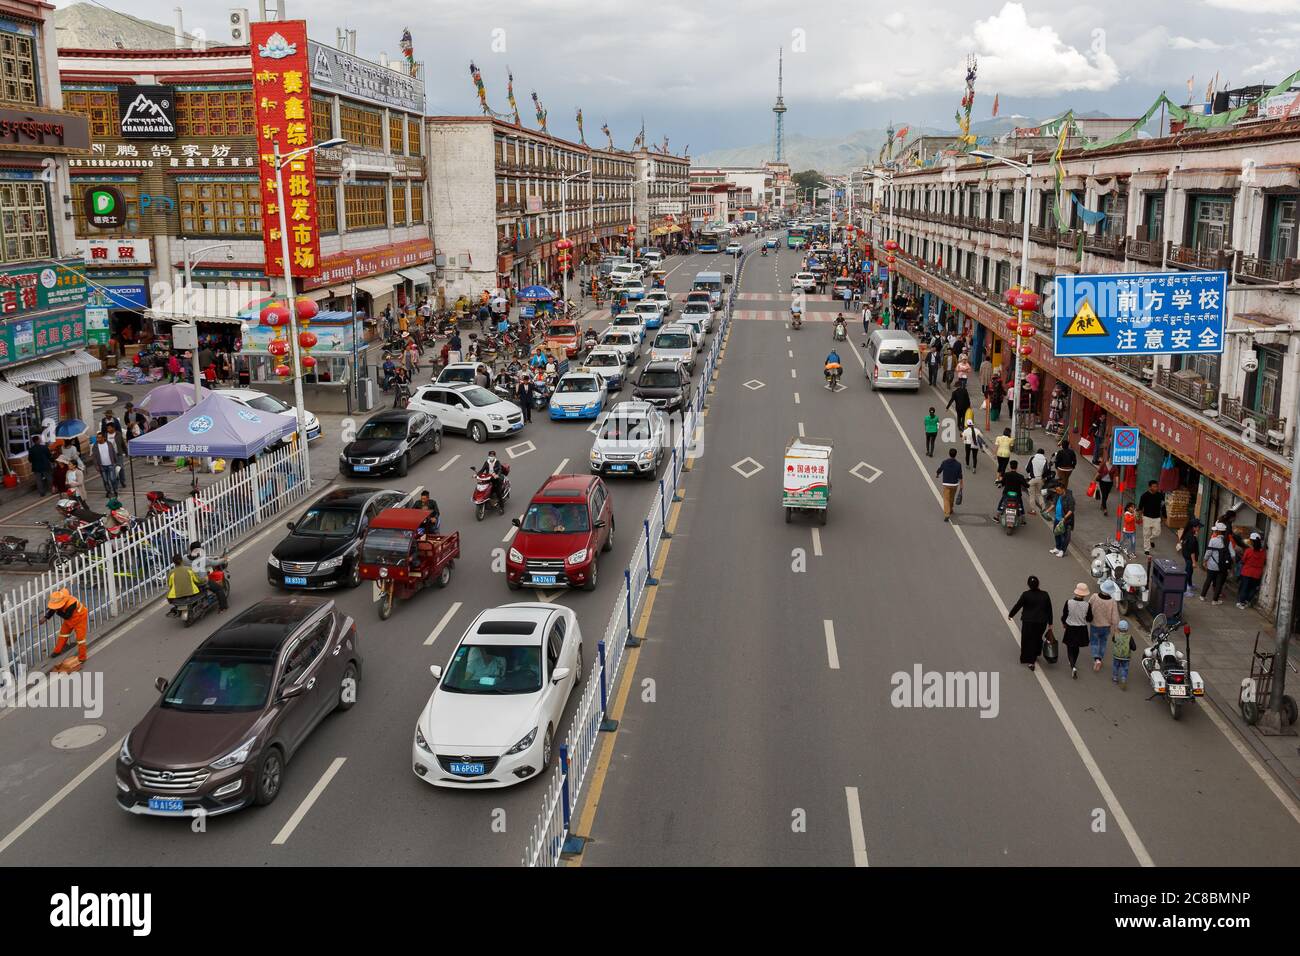 Lhasa, Tibet / China - 29. Jul 2017: Blick auf die geschäftige Hauptstraße von Lhasa (Hauptstadt Tibets). Auf der linken Spur ein Stau. Links und rechts s Stockfoto